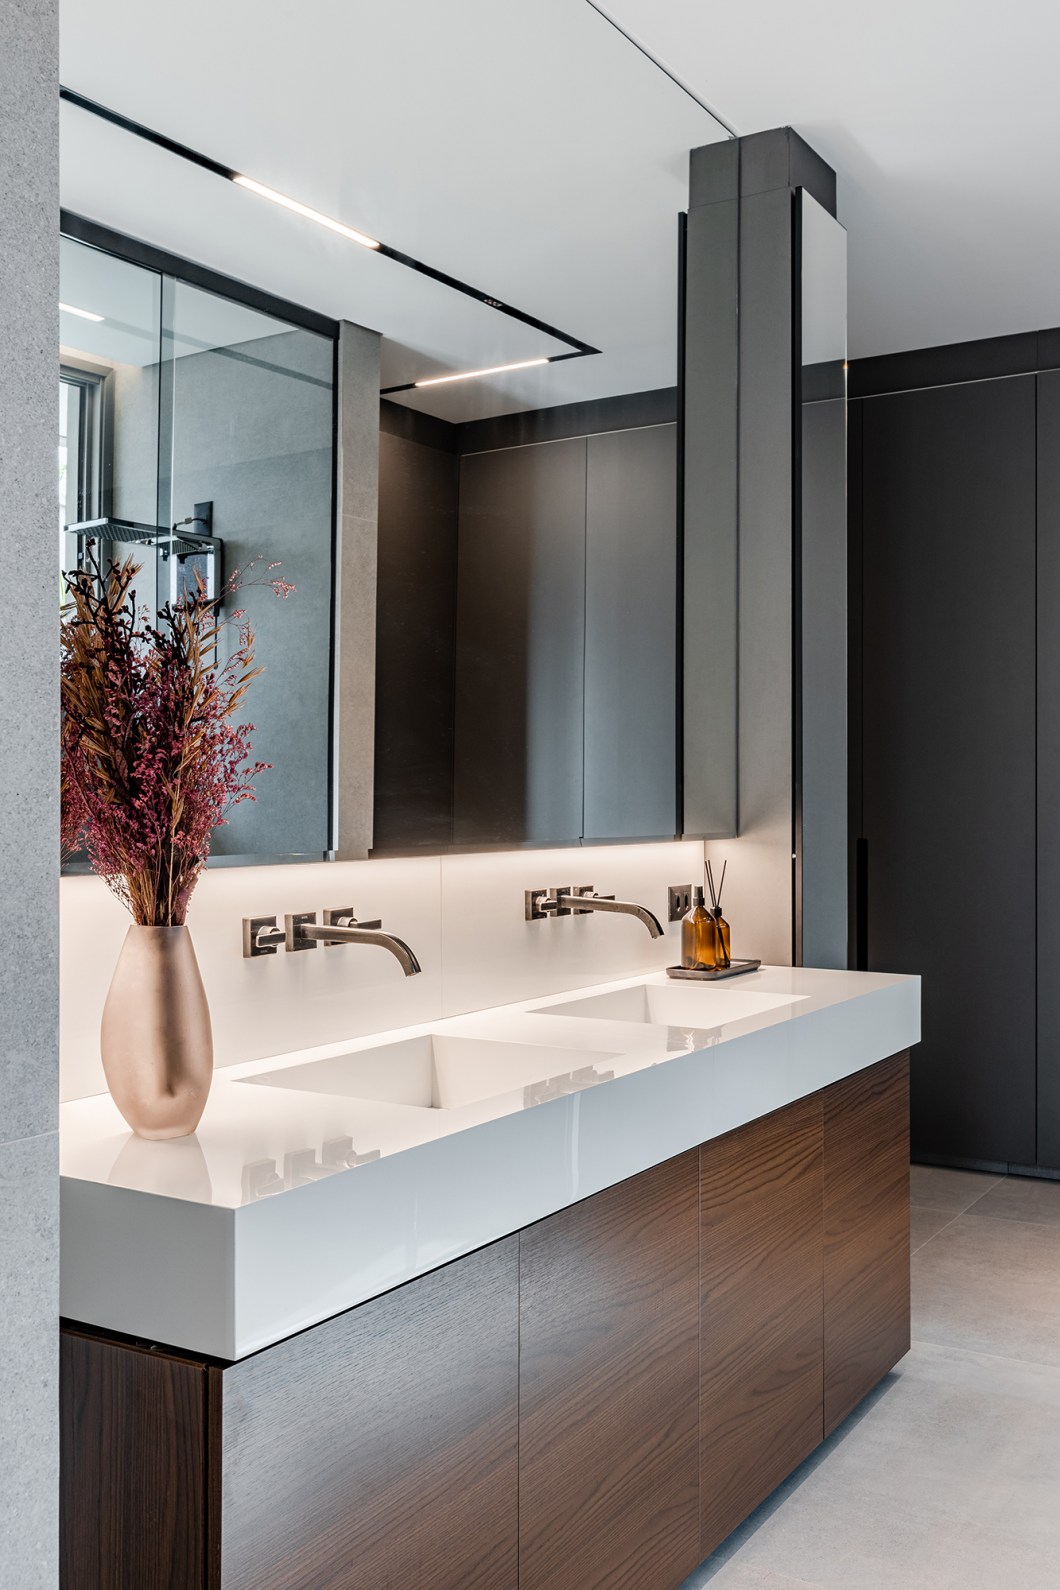 Tons escuros e grandes aberturas criam sofisticação em casa de 430 m². Projeto de Aline Borges. Na foto, banheiro com cuba dupla.